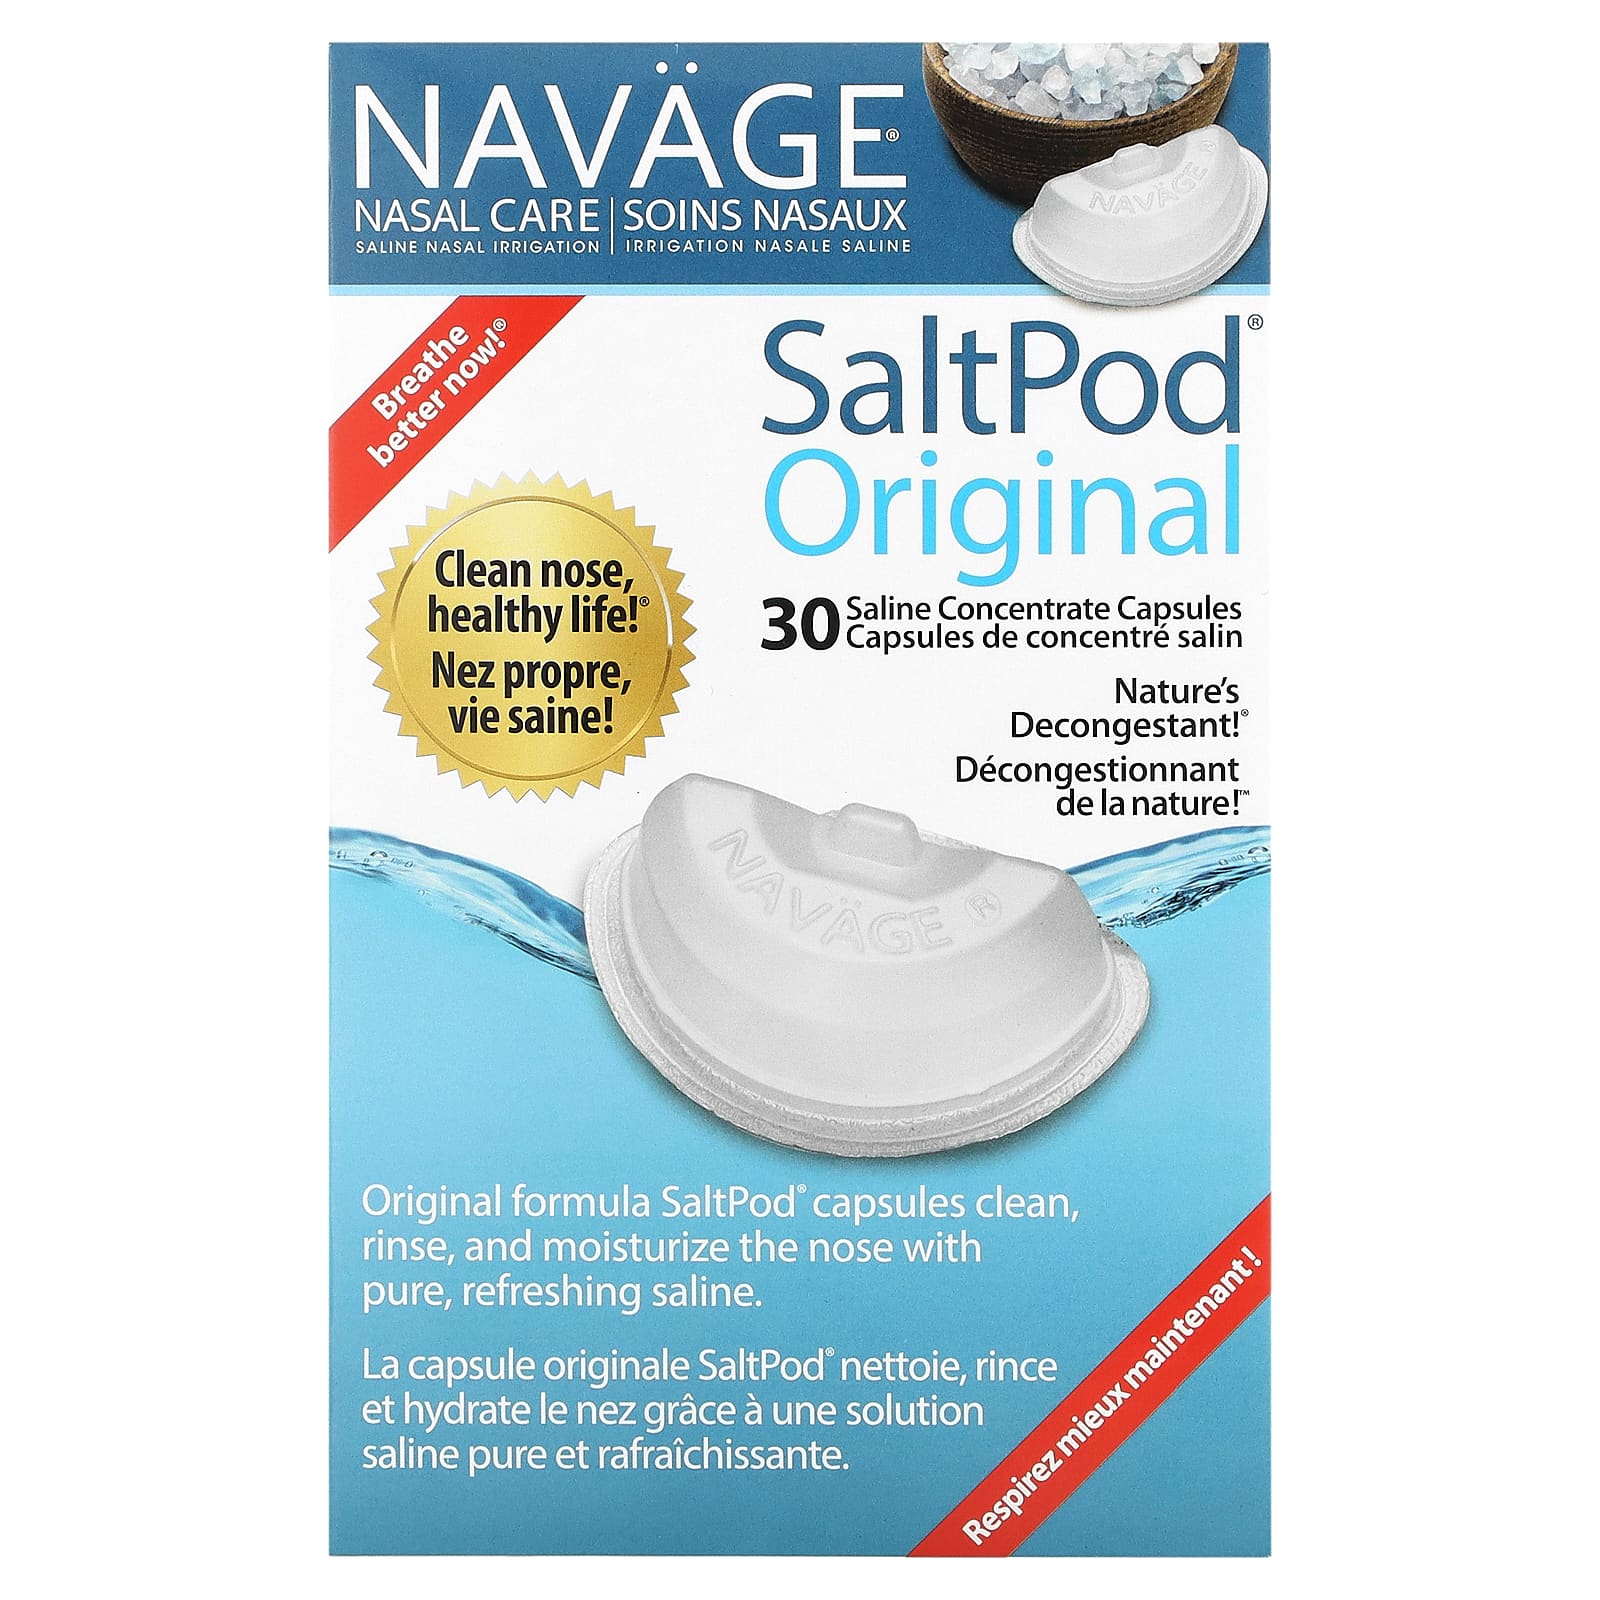 Солевое Промывание Носа Navage Saltpod Original, 30 капсул navage nasal care солевое промывание носа saltpod original 30 капсул с солевым концентратом